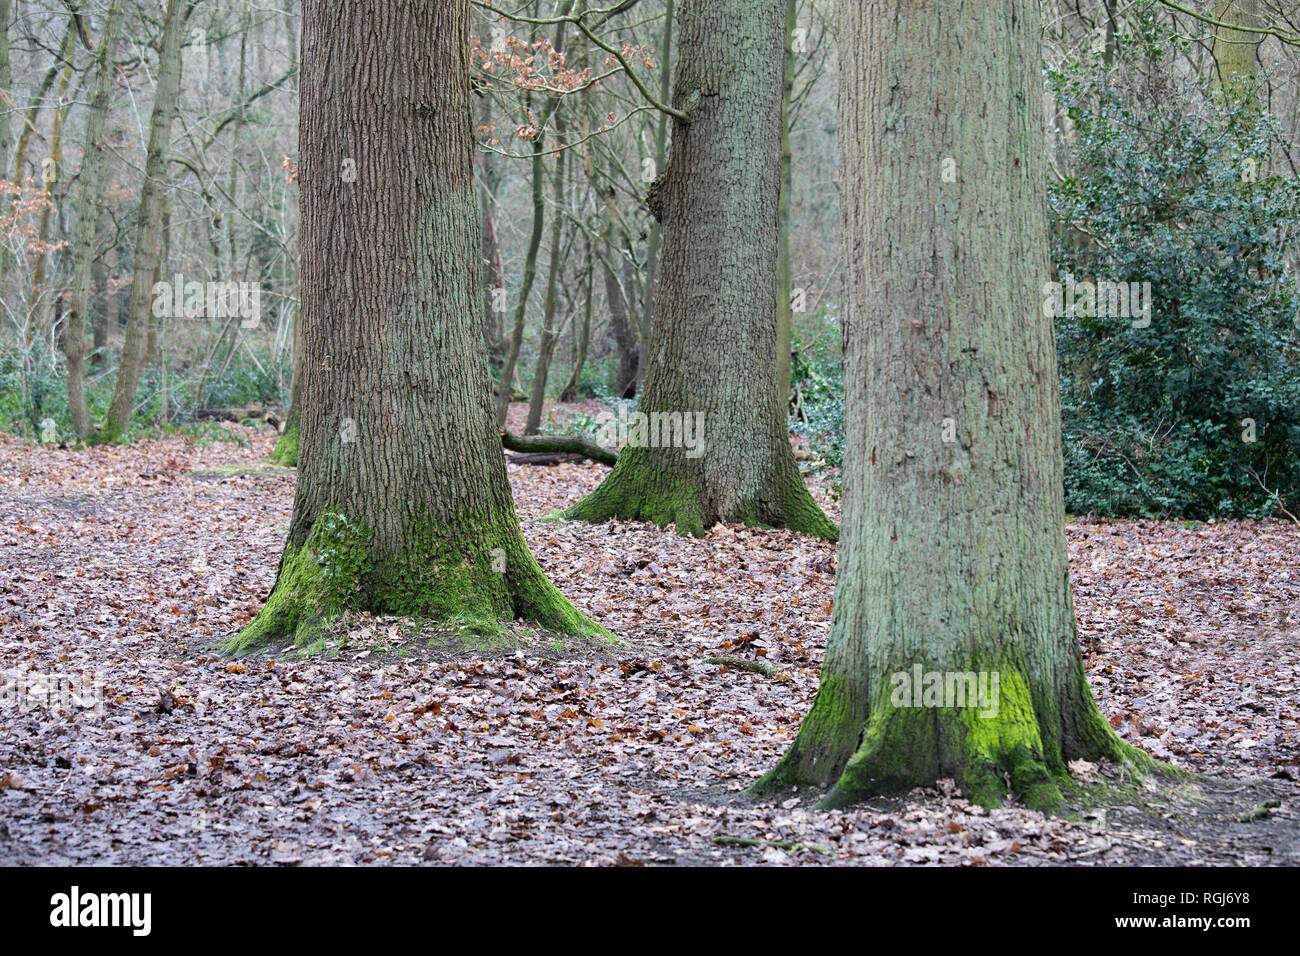 Una imagen de un trío y árboles de bosque con la importancia de centrarse en el árbol de la izquierda crea una profundidad de campo limitada. Foto de stock